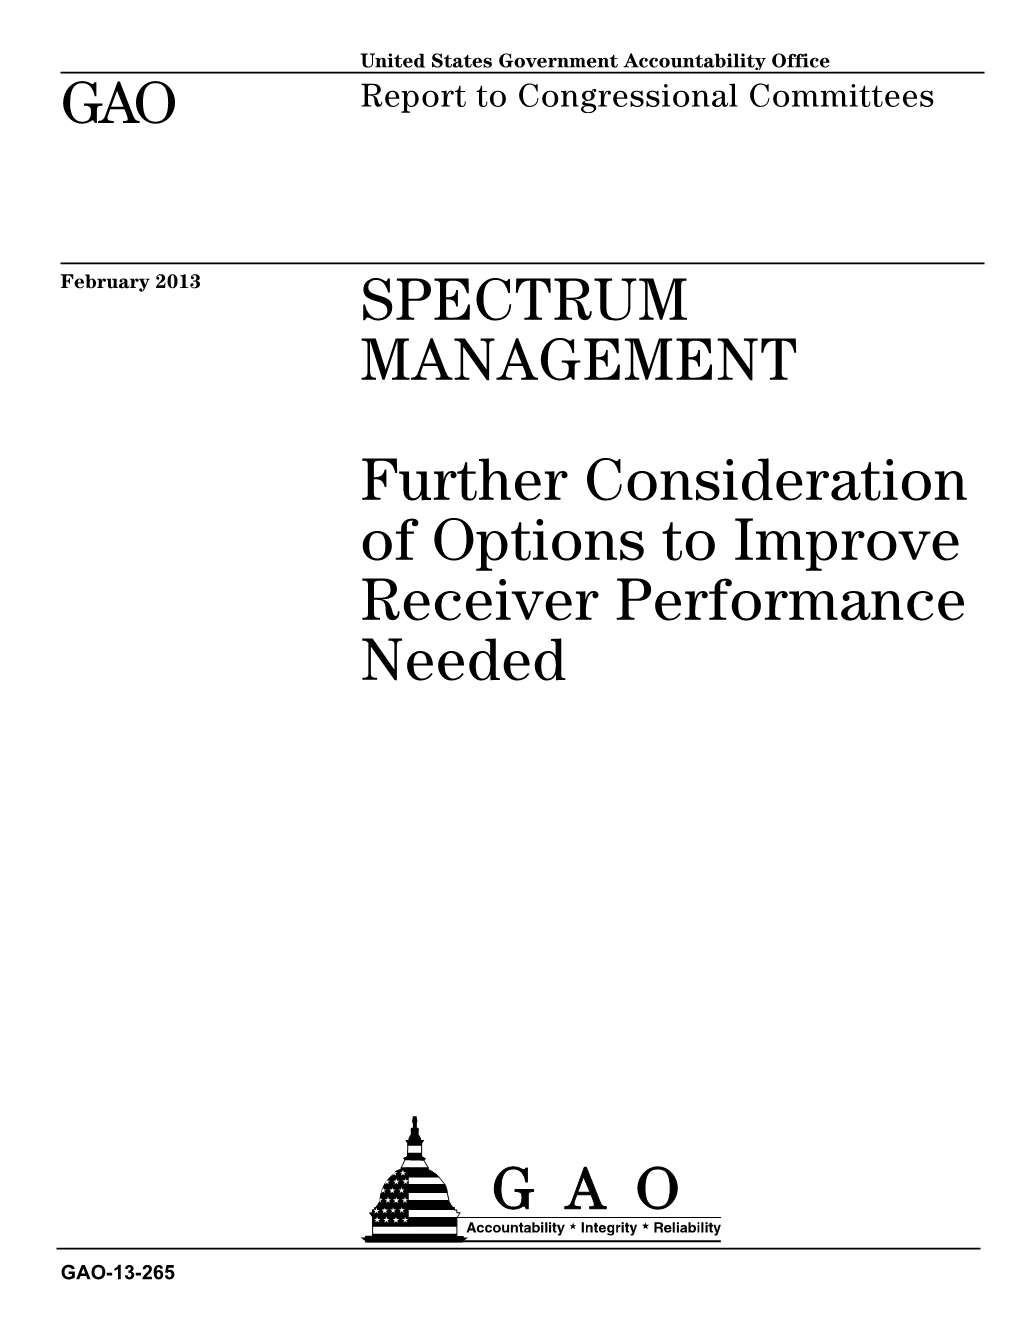 Gao-13-265, Spectrum Management